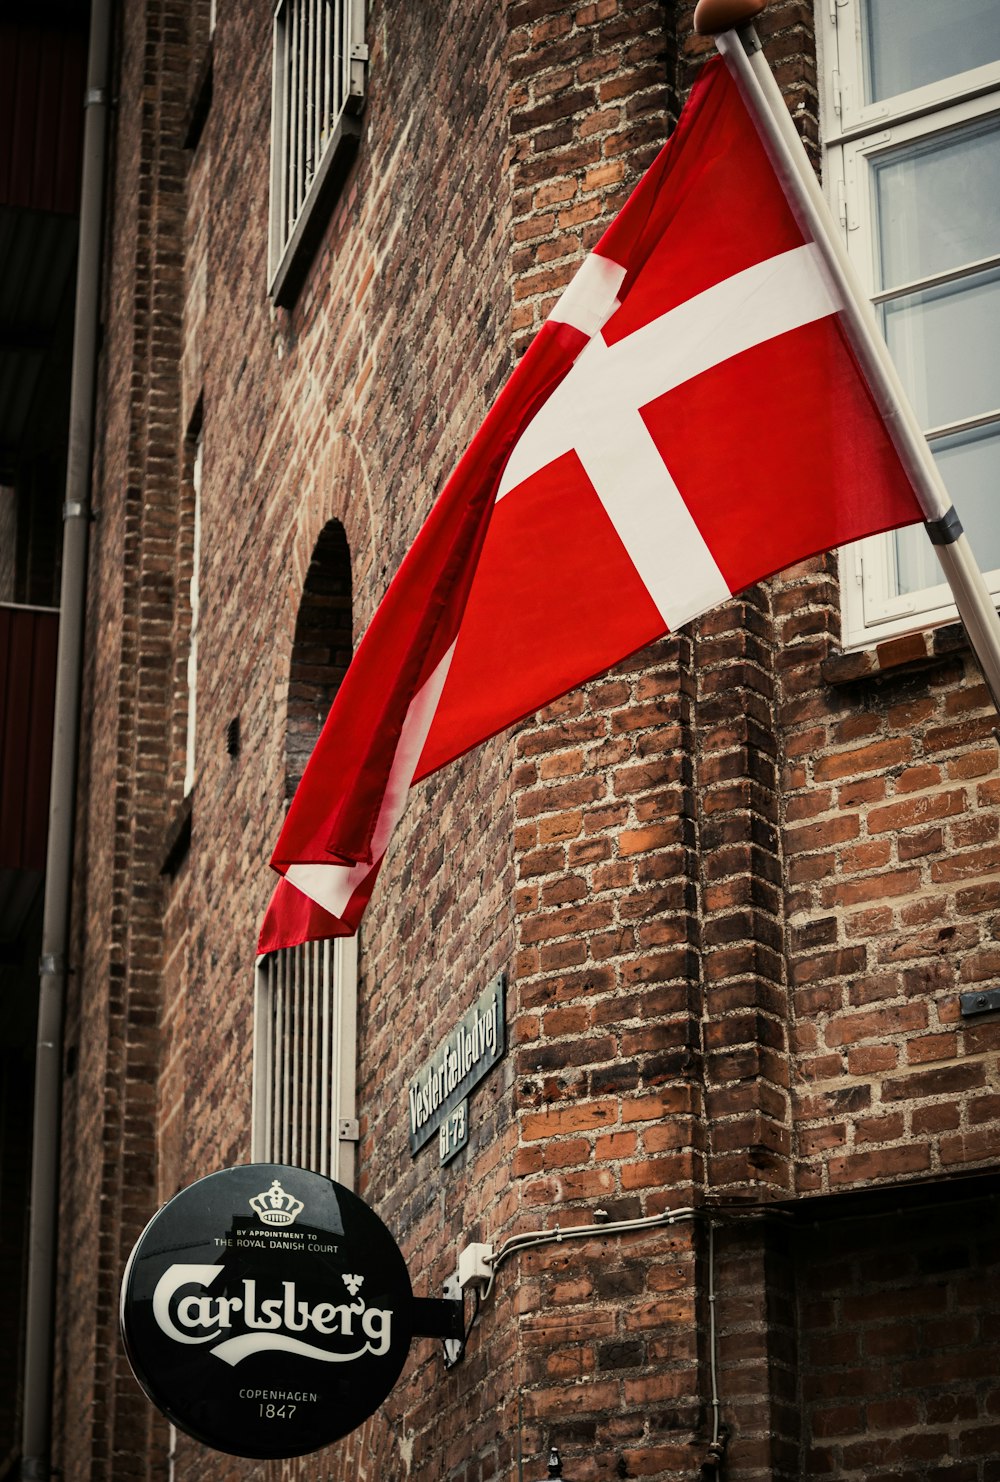 벽돌 건물 옆에 매달려있는 빨간색과 흰색 깃발